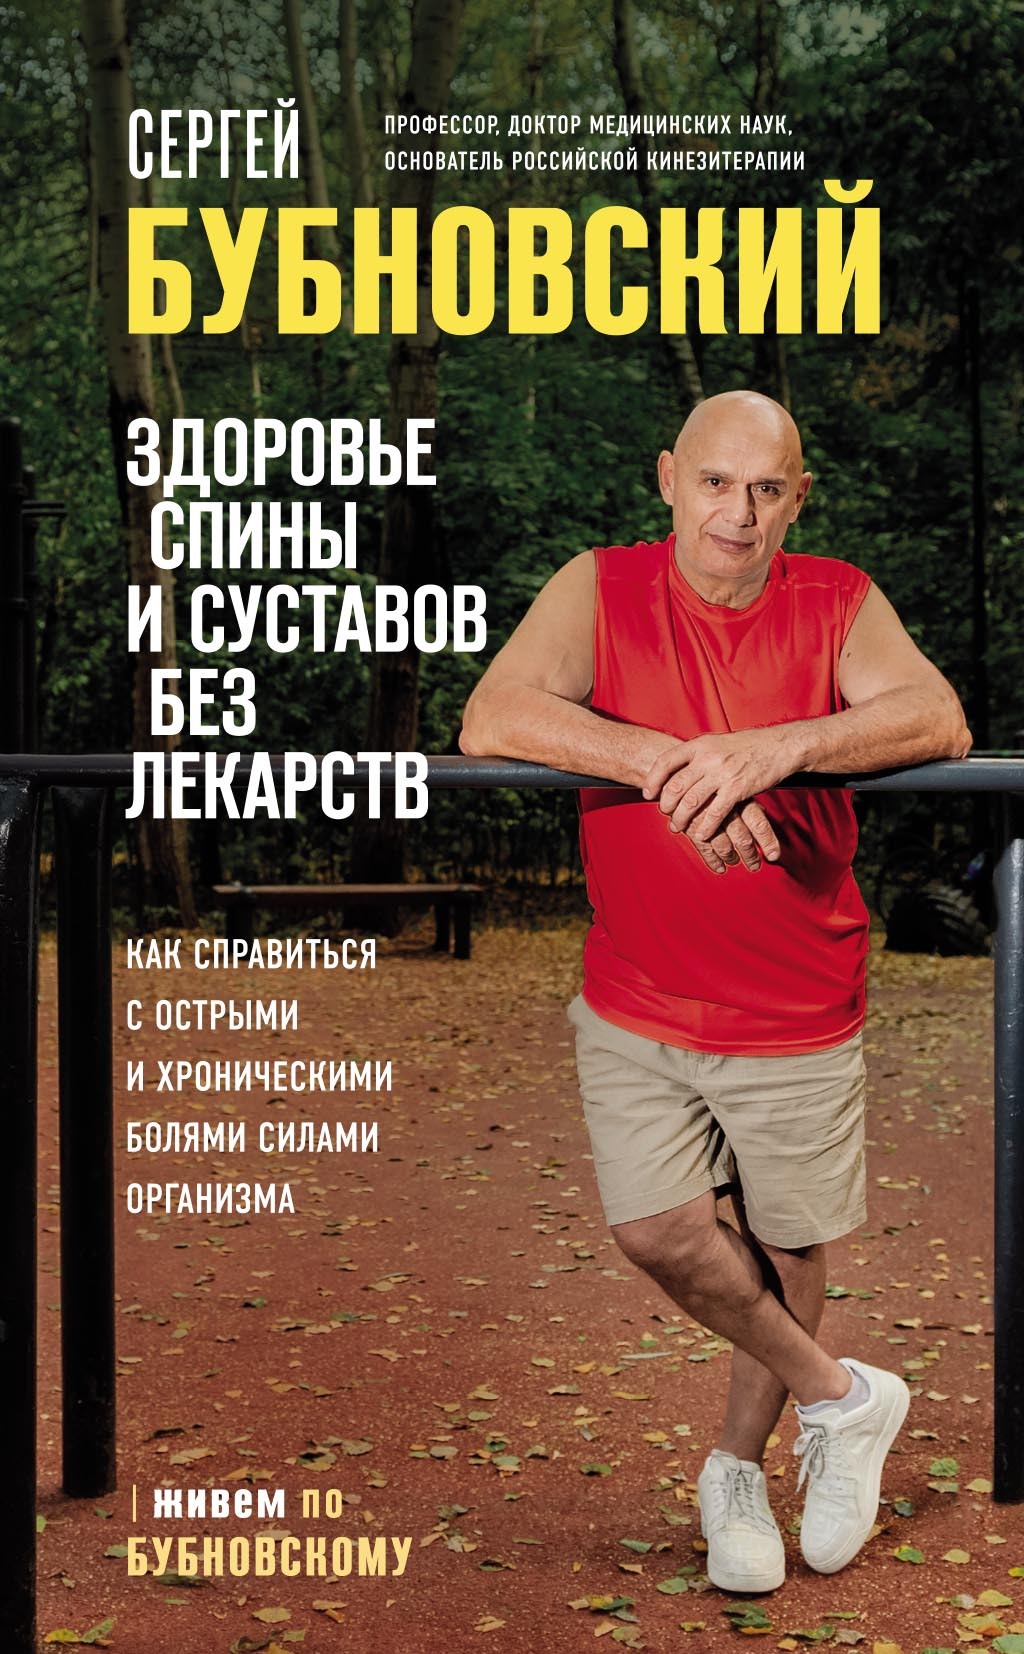 Сергей Бубновский: 50 незаменимых упражнений для дома и зала